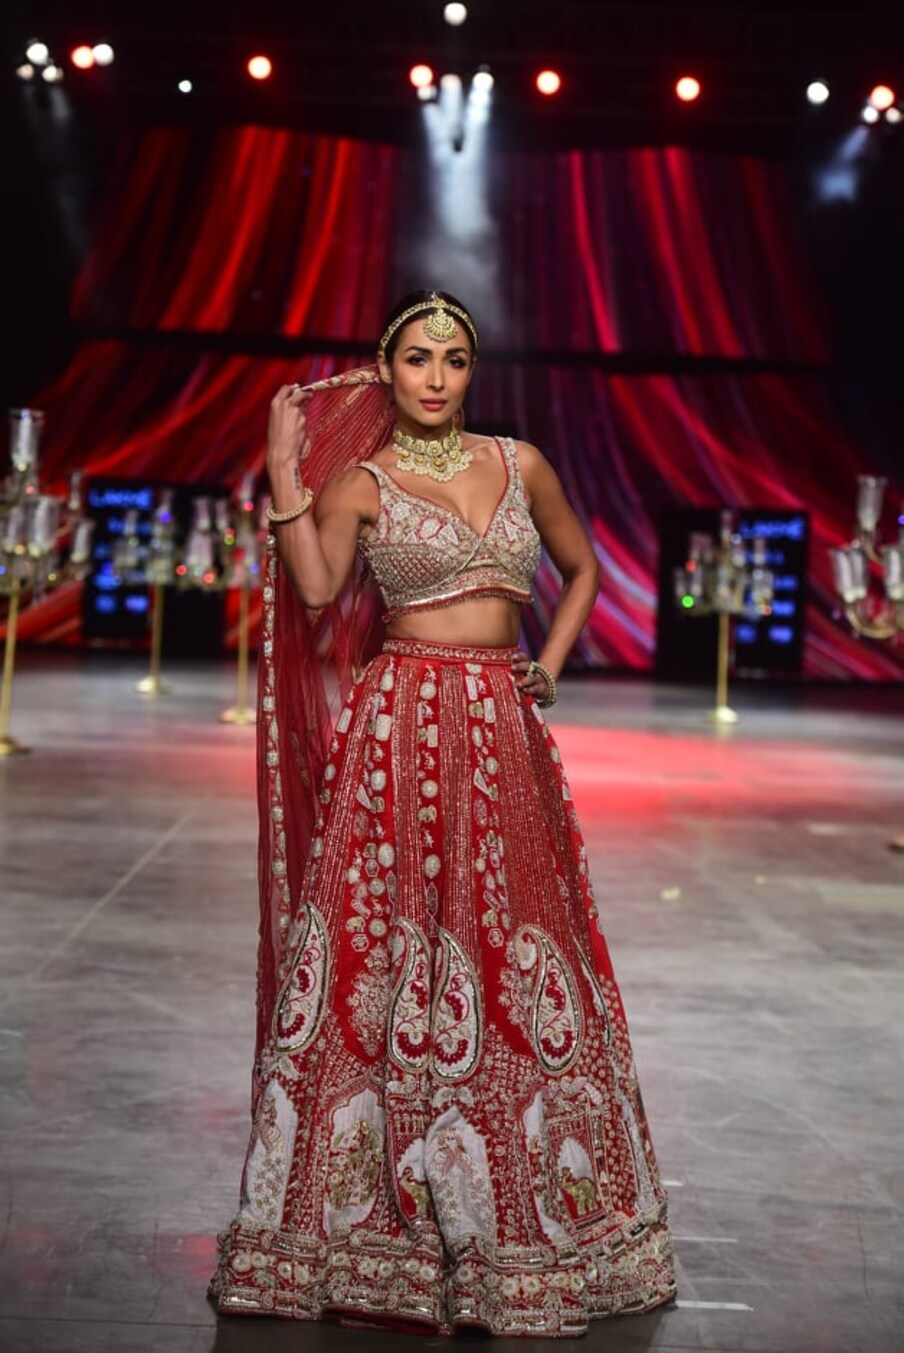 अभिनेत्री भारी कलाकुसर असणार गोल्डन आणि लाल रंगाचा लेहंगा परिधान केला होता. (फोटो सौजन्य- Viral Bhayani)